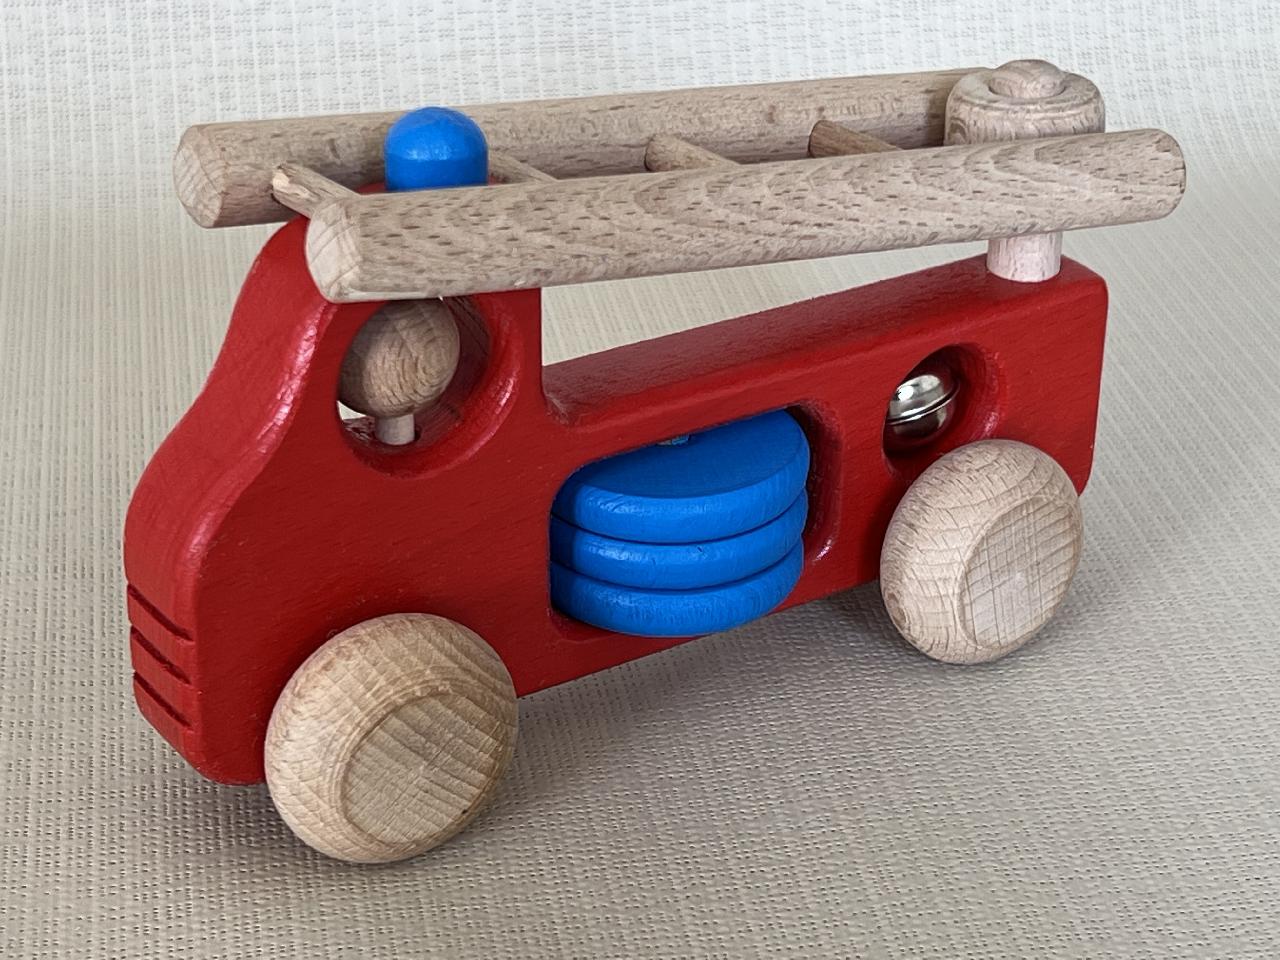 Dřevěné hasičské auto pro nejmenší